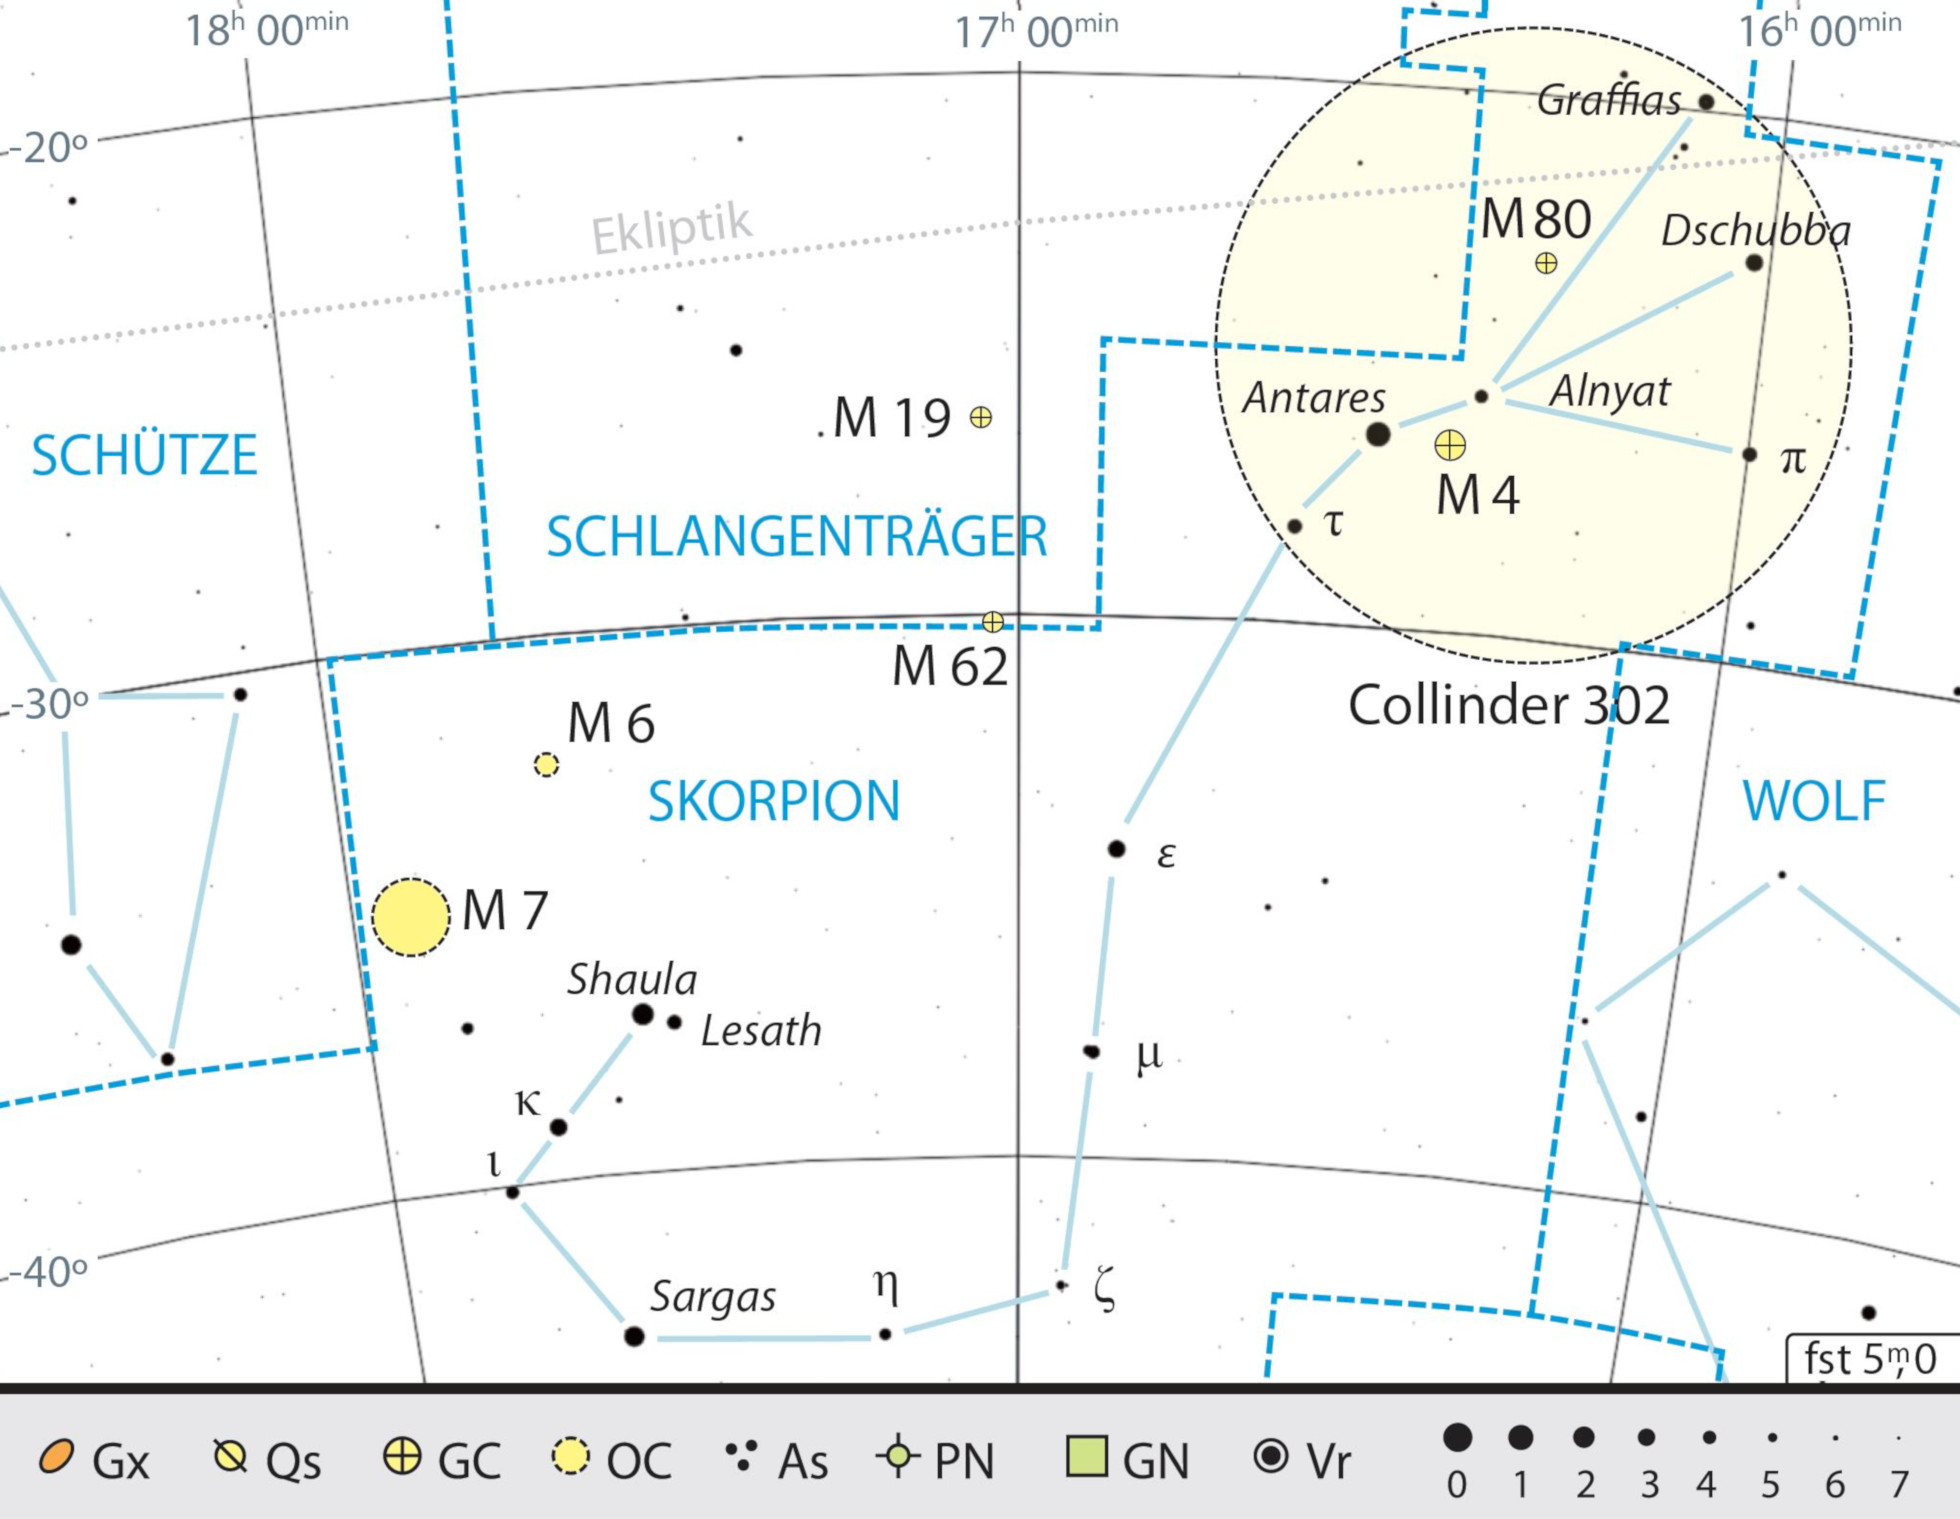 Mappa celeste per la costellazione dello Scorpione con gli oggetti consigliati; nel cerchio, l'Associazione di Antares. Kai v. Schauroth